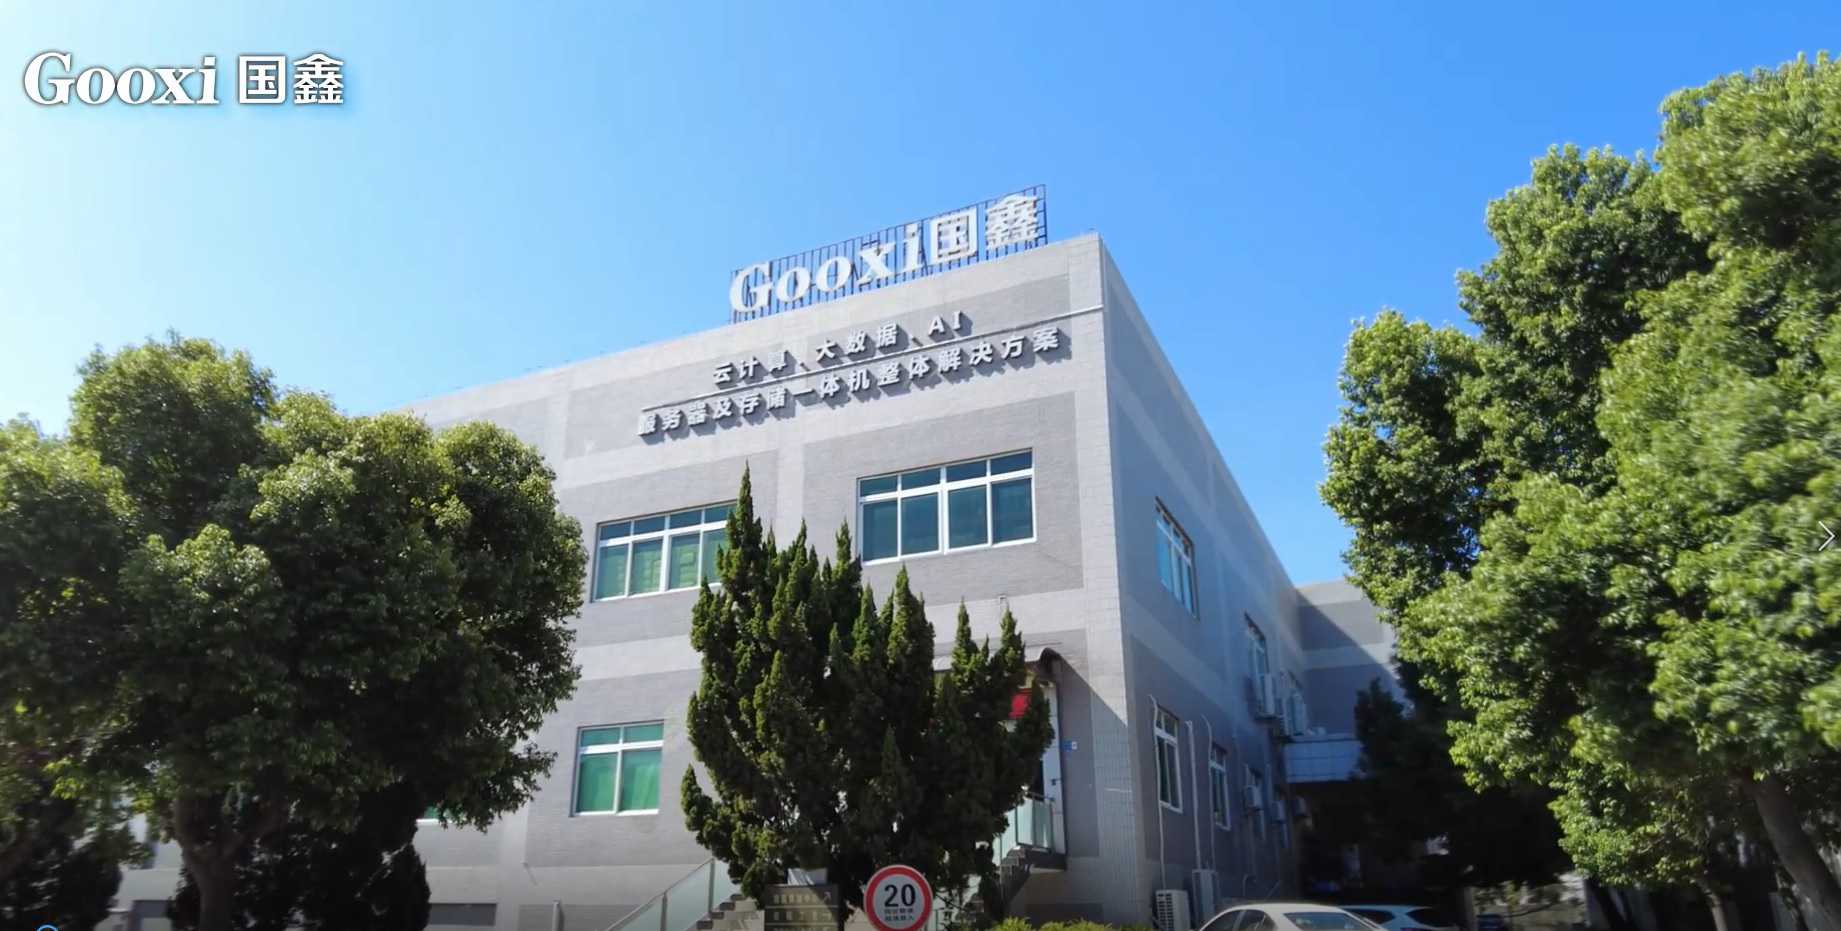 Shenzhen Gooxi Information Security Co., Ltd.